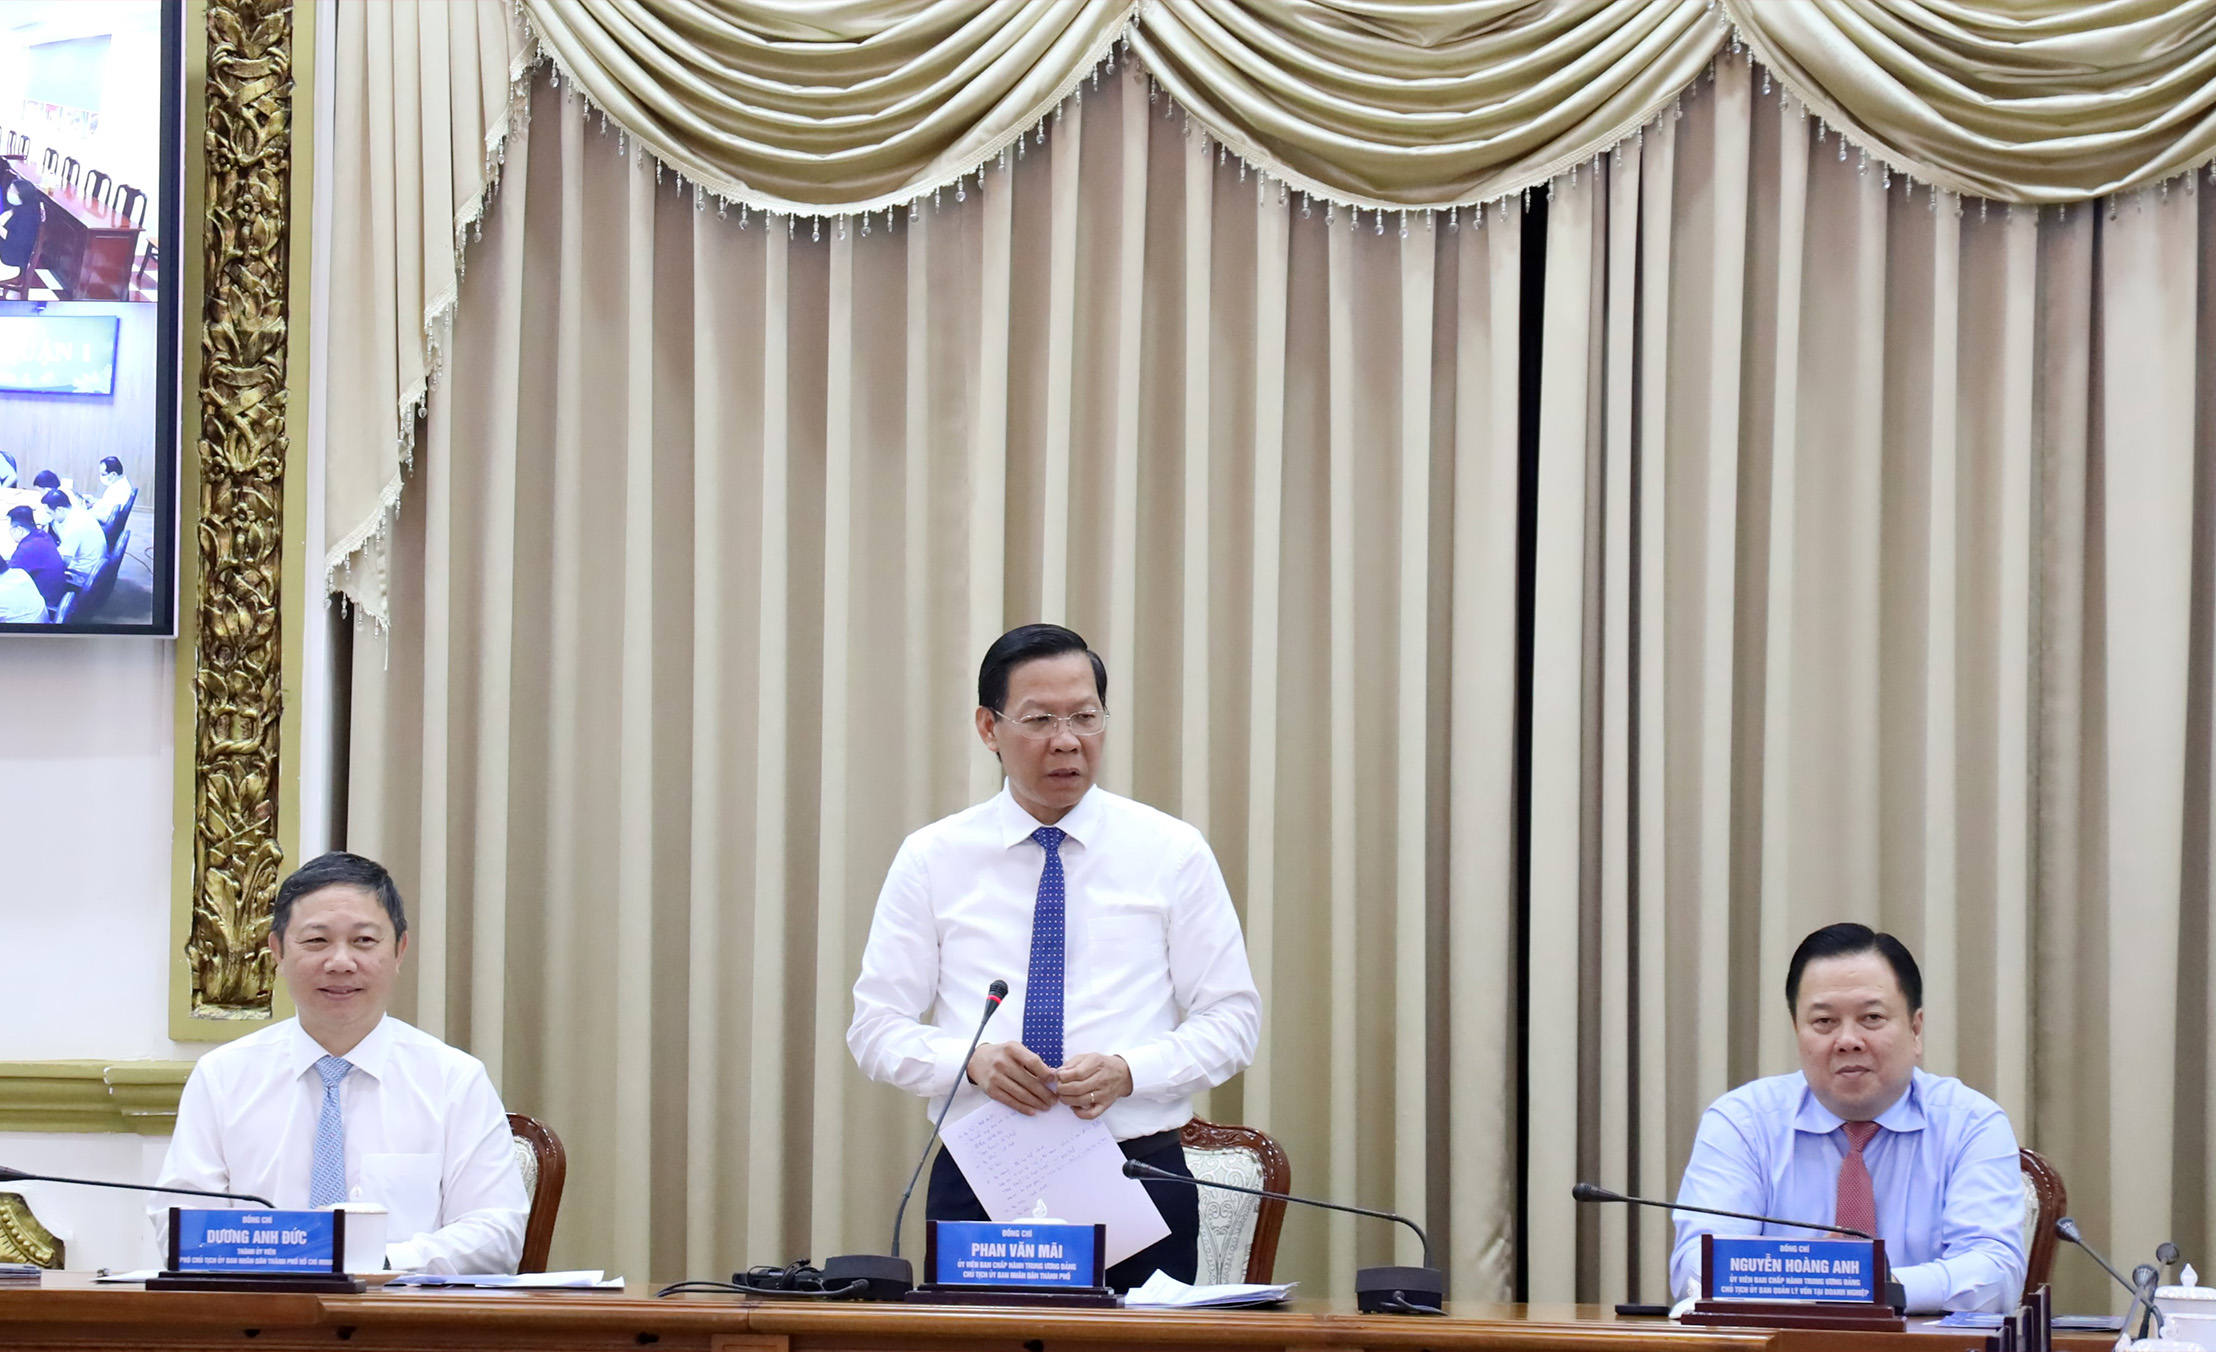 Đồng chí Phan Văn Mãi - Ủy viên Trung ương Đảng, Phó Bí thư Thường trực Thành uỷ, Chủ tịch UBND TP. Hồ Chí Minh phát biểu tại buổi Lễ.